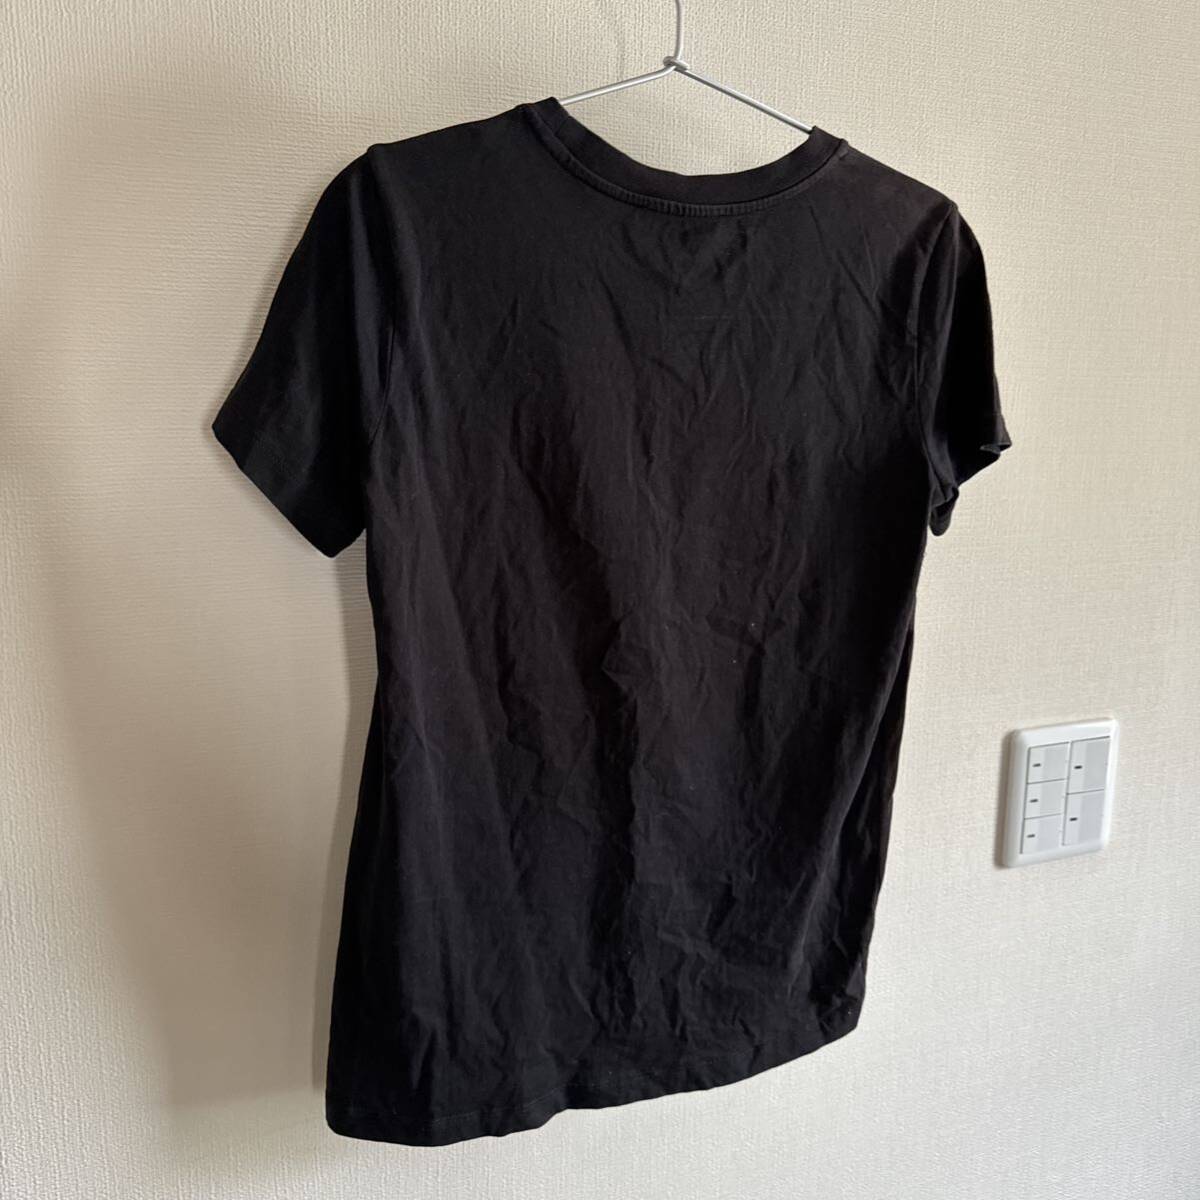  diesel T-shirt black 